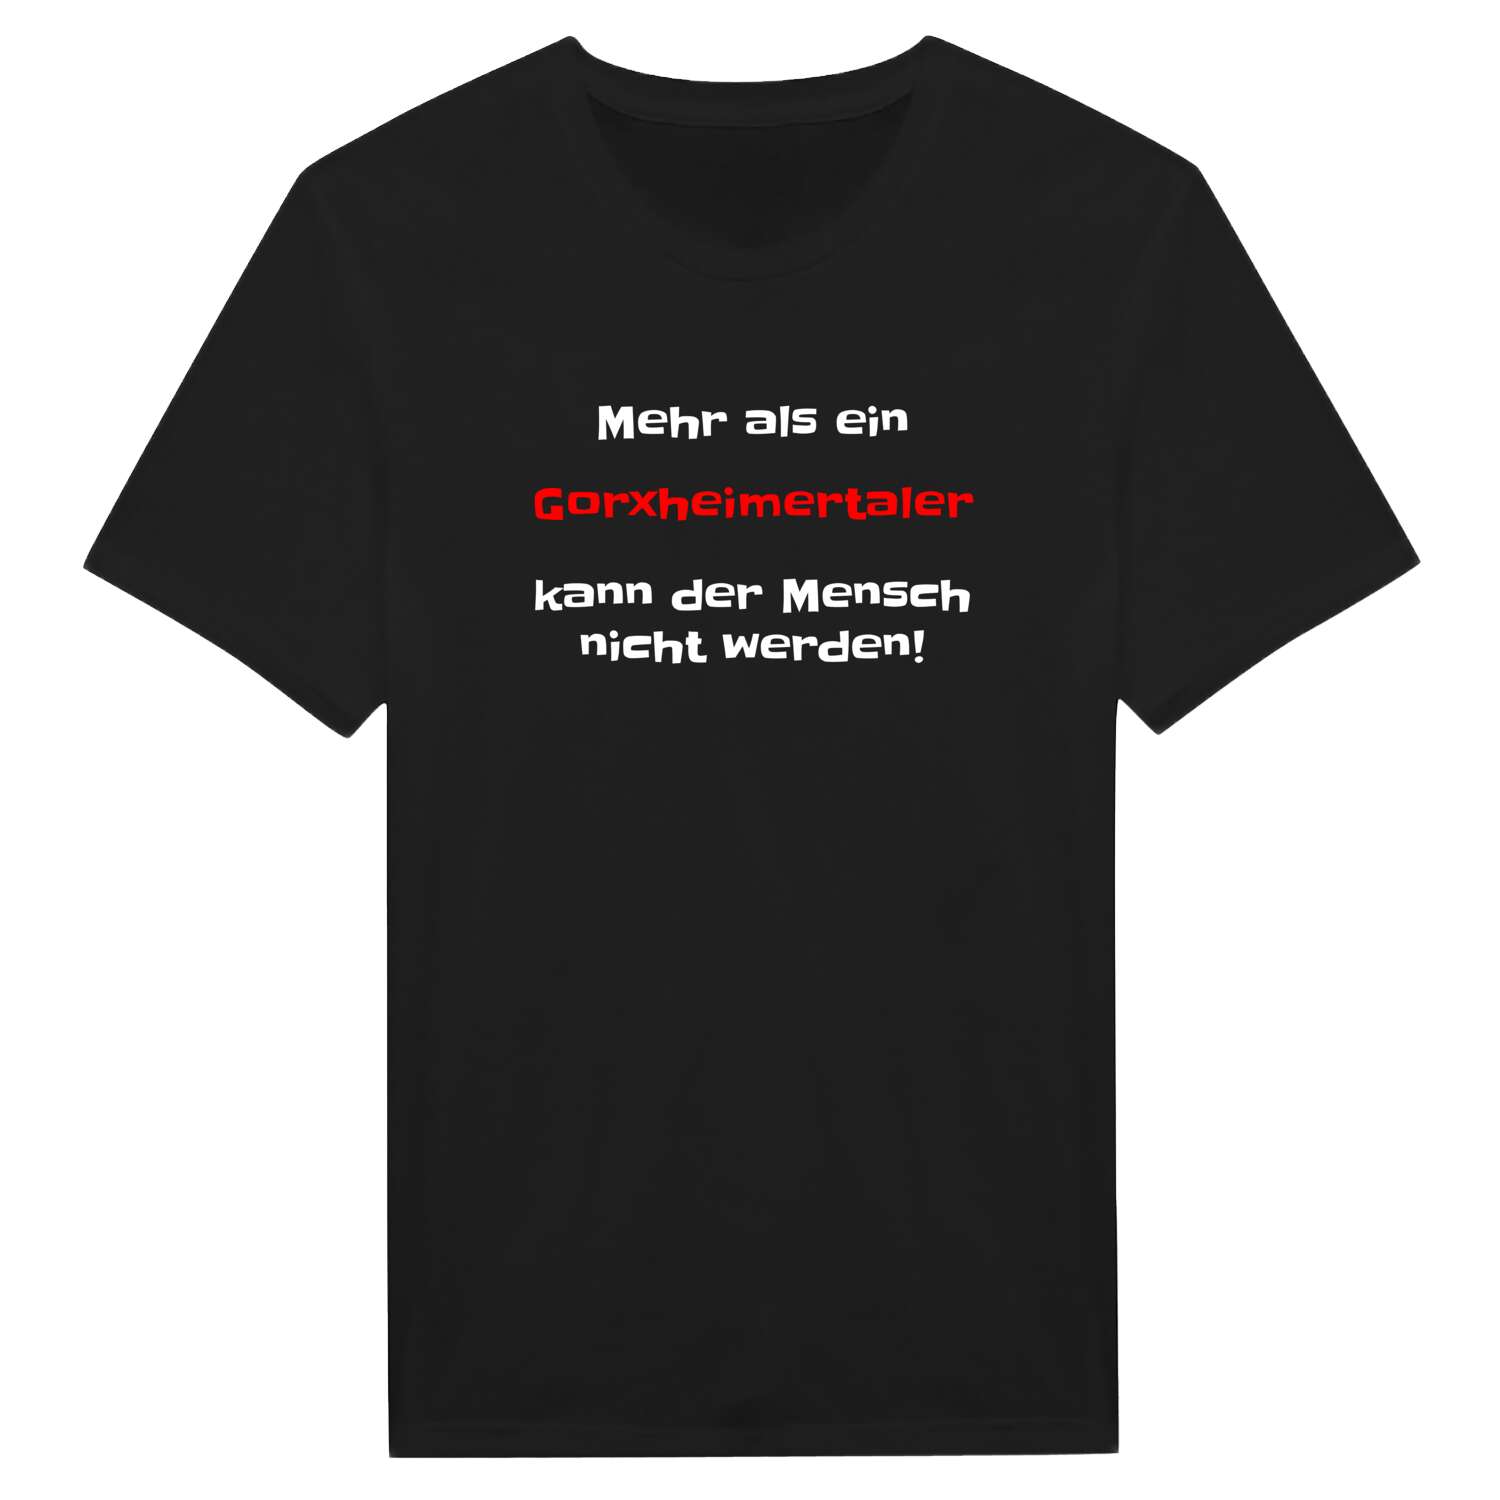 Gorxheimertal T-Shirt »Mehr als ein«